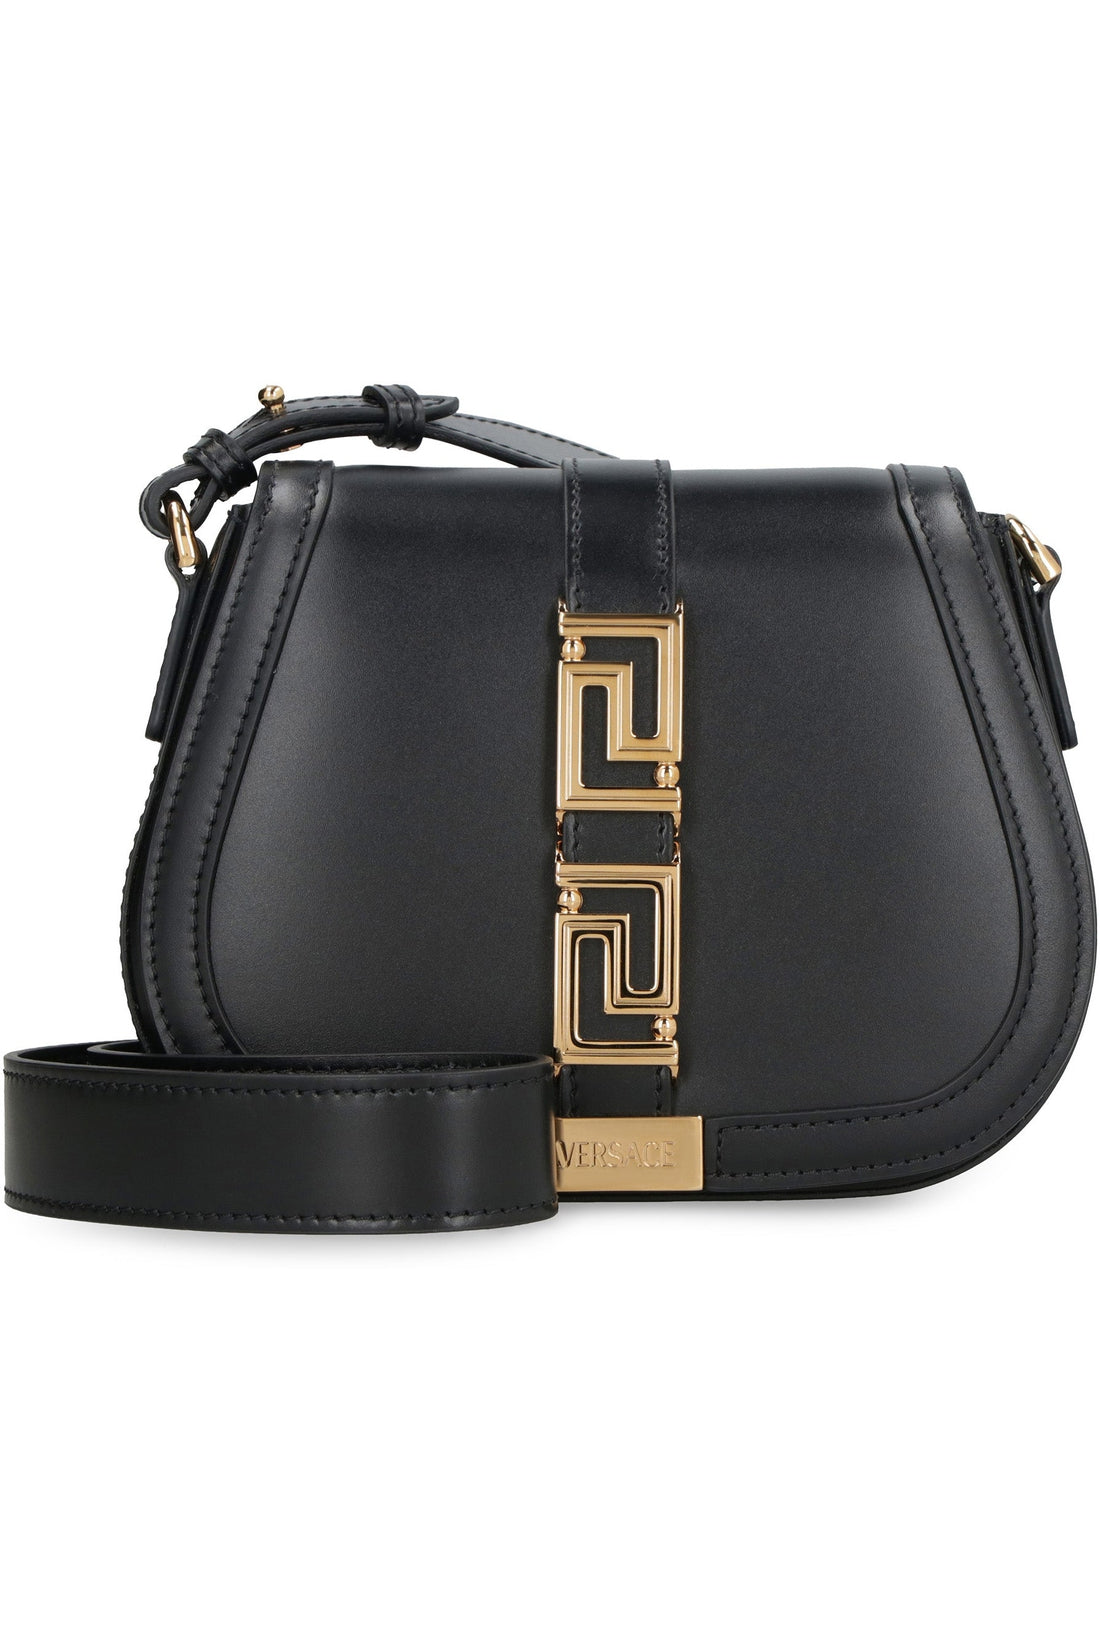 Versace-OUTLET-SALE-Greca Goddess leather shoulder bag-ARCHIVIST